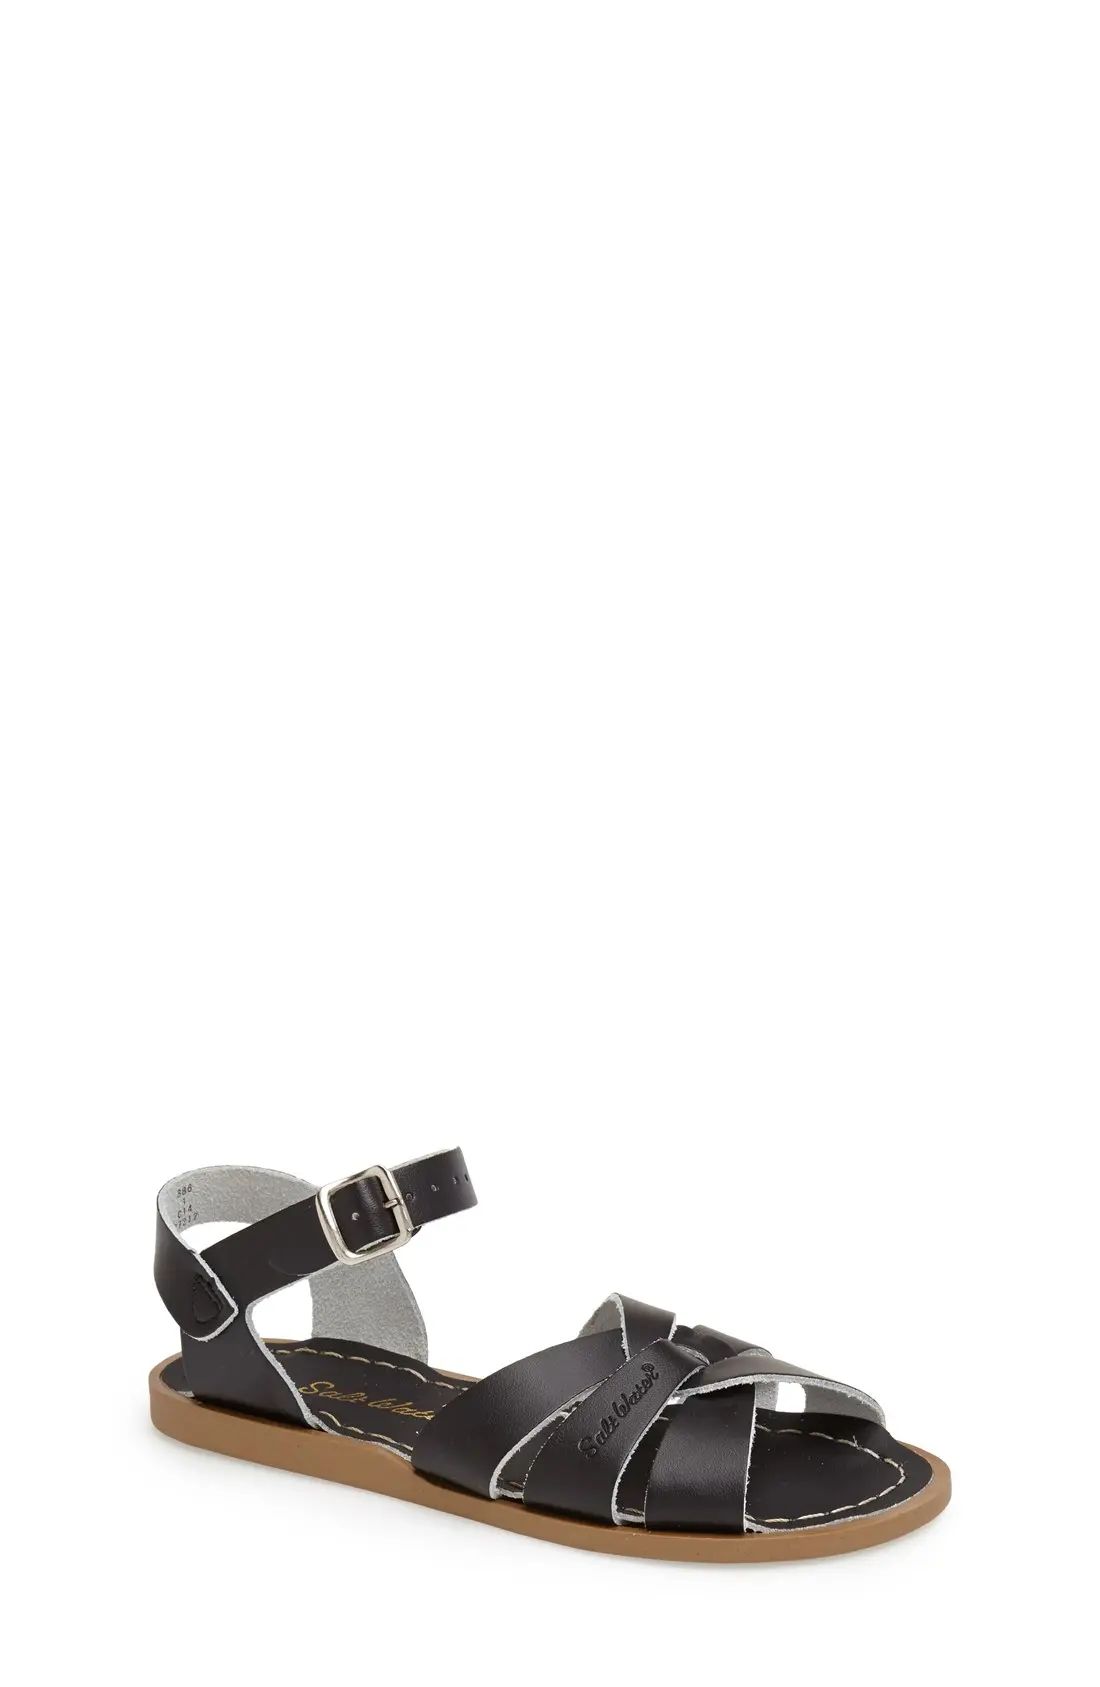 Salt Water Sandals by Hoy Original Sandal in Black at Nordstrom, Size 9 M | Nordstrom